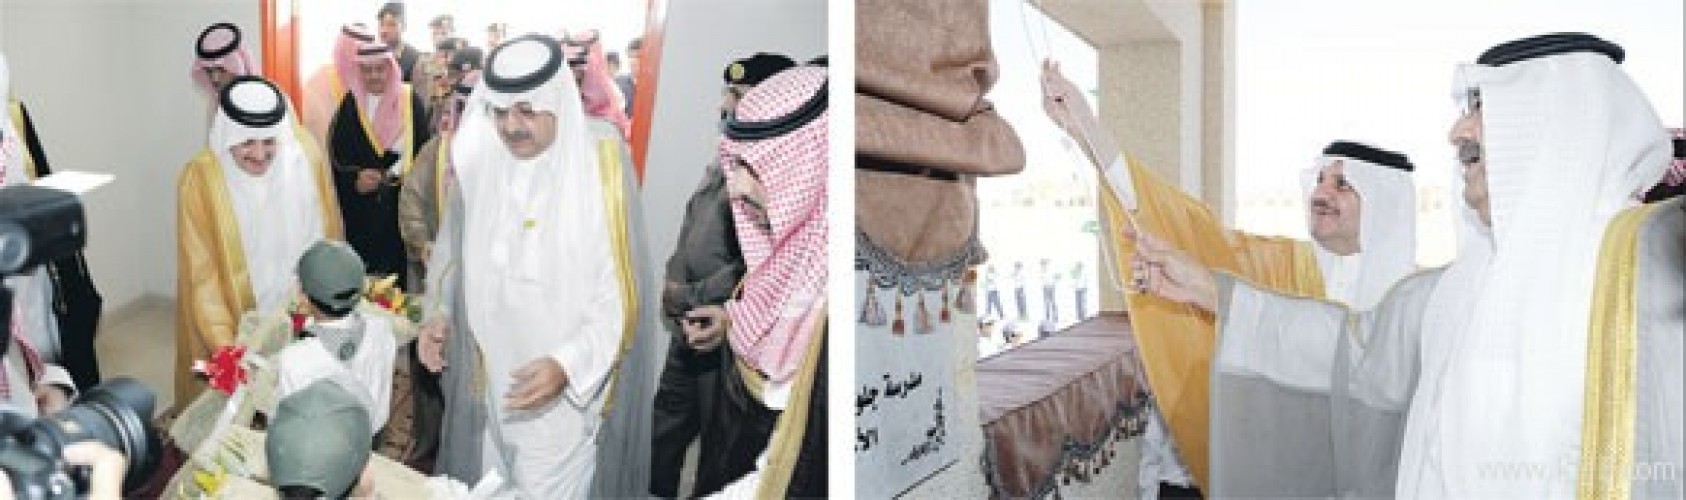 الأمير سعود بن نايف: التمسك بثوابتنا الوطنية قوة للتصدي للدعوات الباطلة